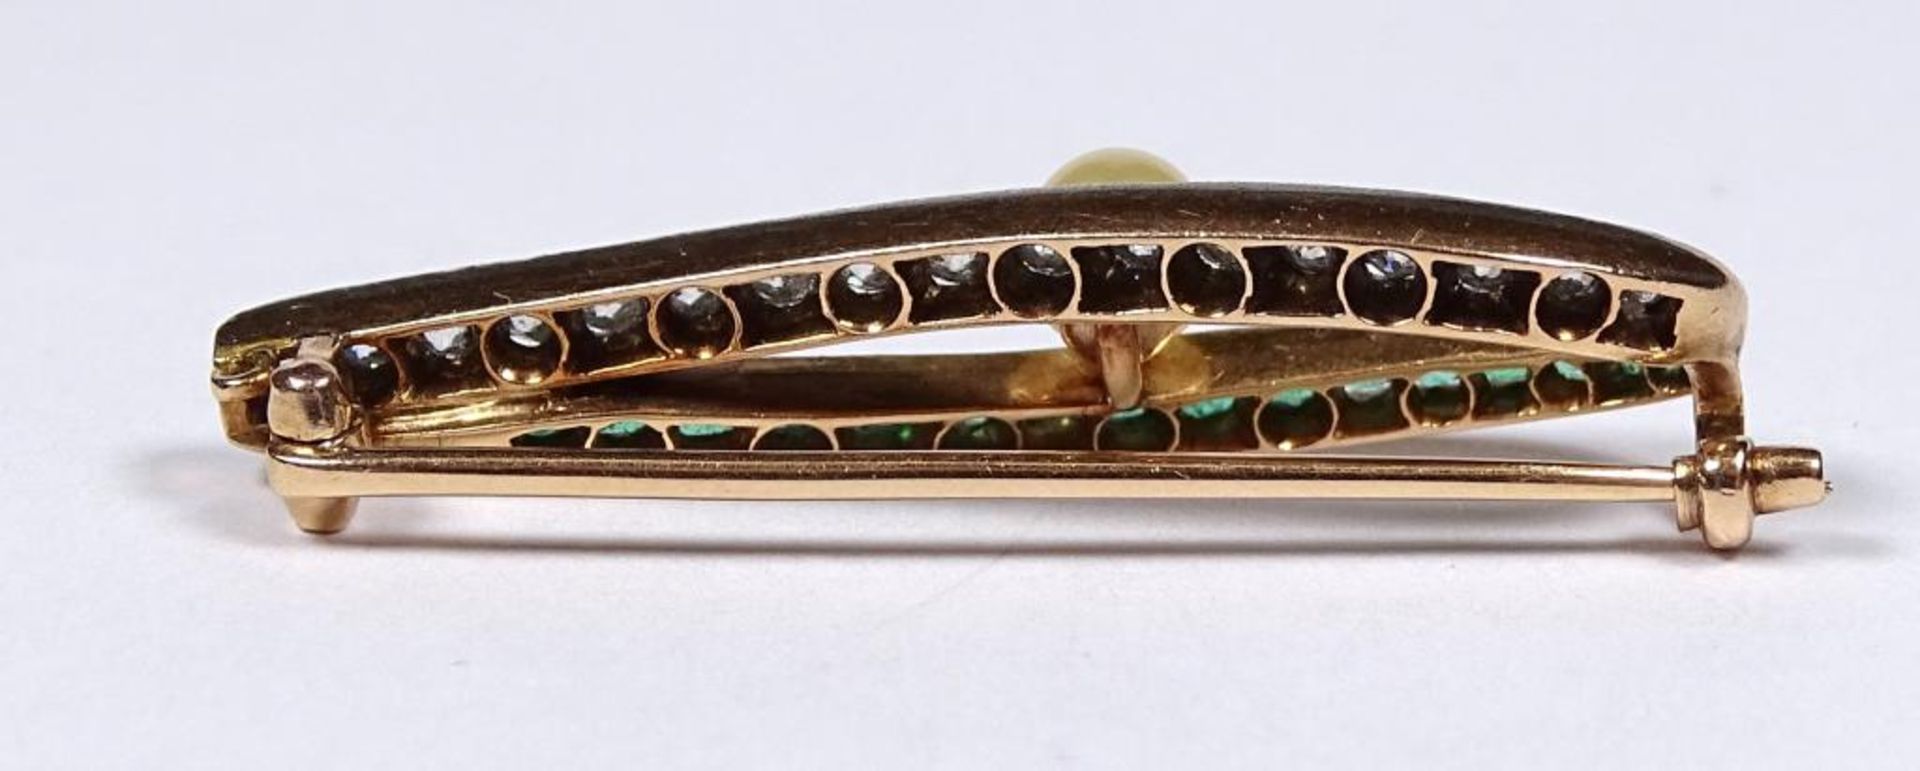 Antike Goldbrosche um 585 (gepr.),Diamanten und Smaragde,mittig Perle, L-38mm,b-11mm, 4,62gr. - Bild 3 aus 3